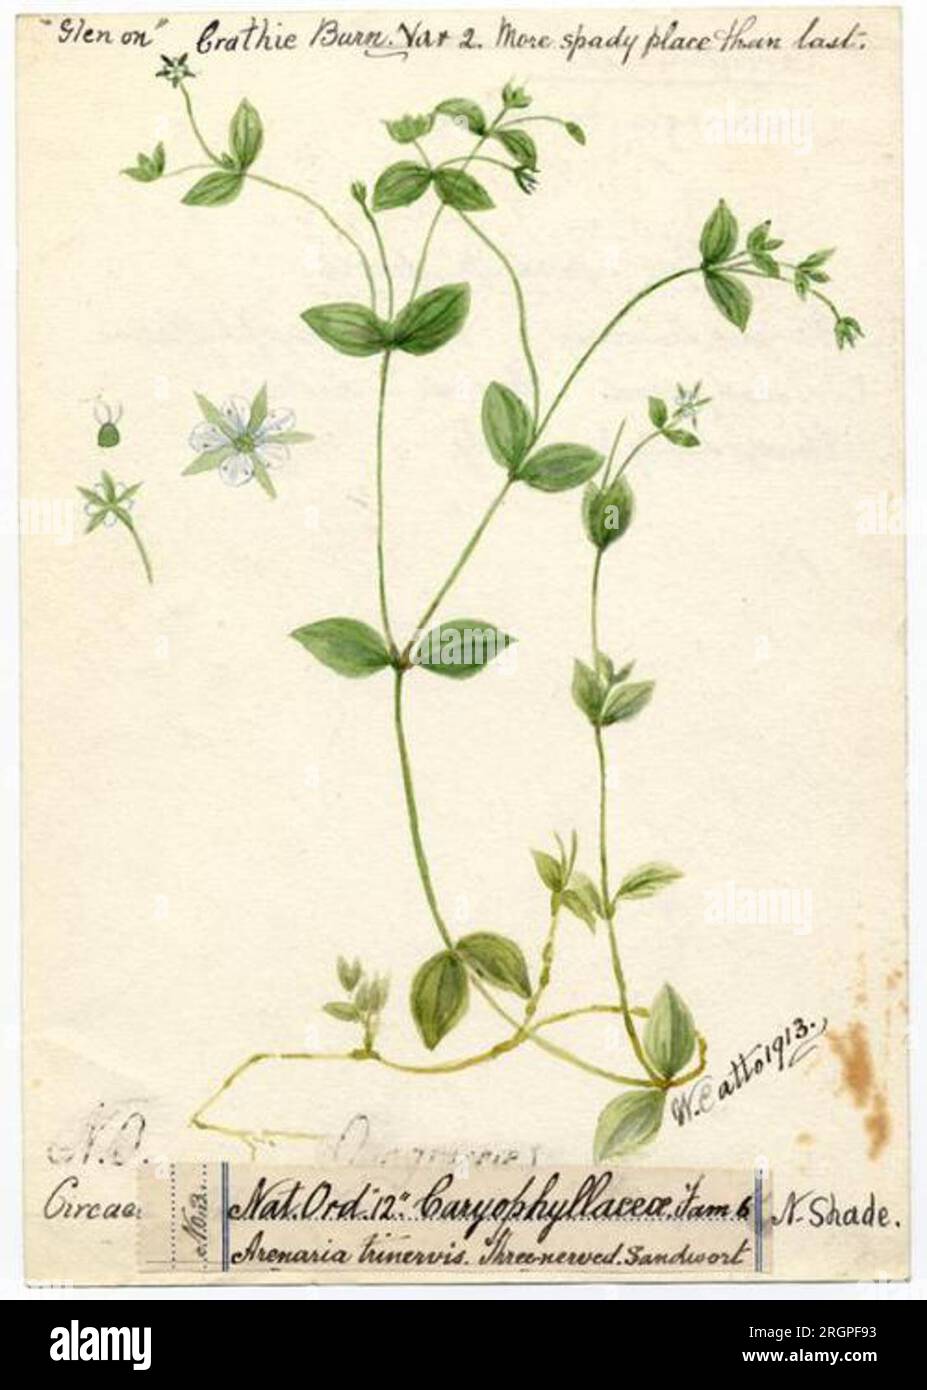 Three-nerved sandwort (Moehringia trinervia) - William Catto - ABDAG016292 1913 by William Catto Stock Photo